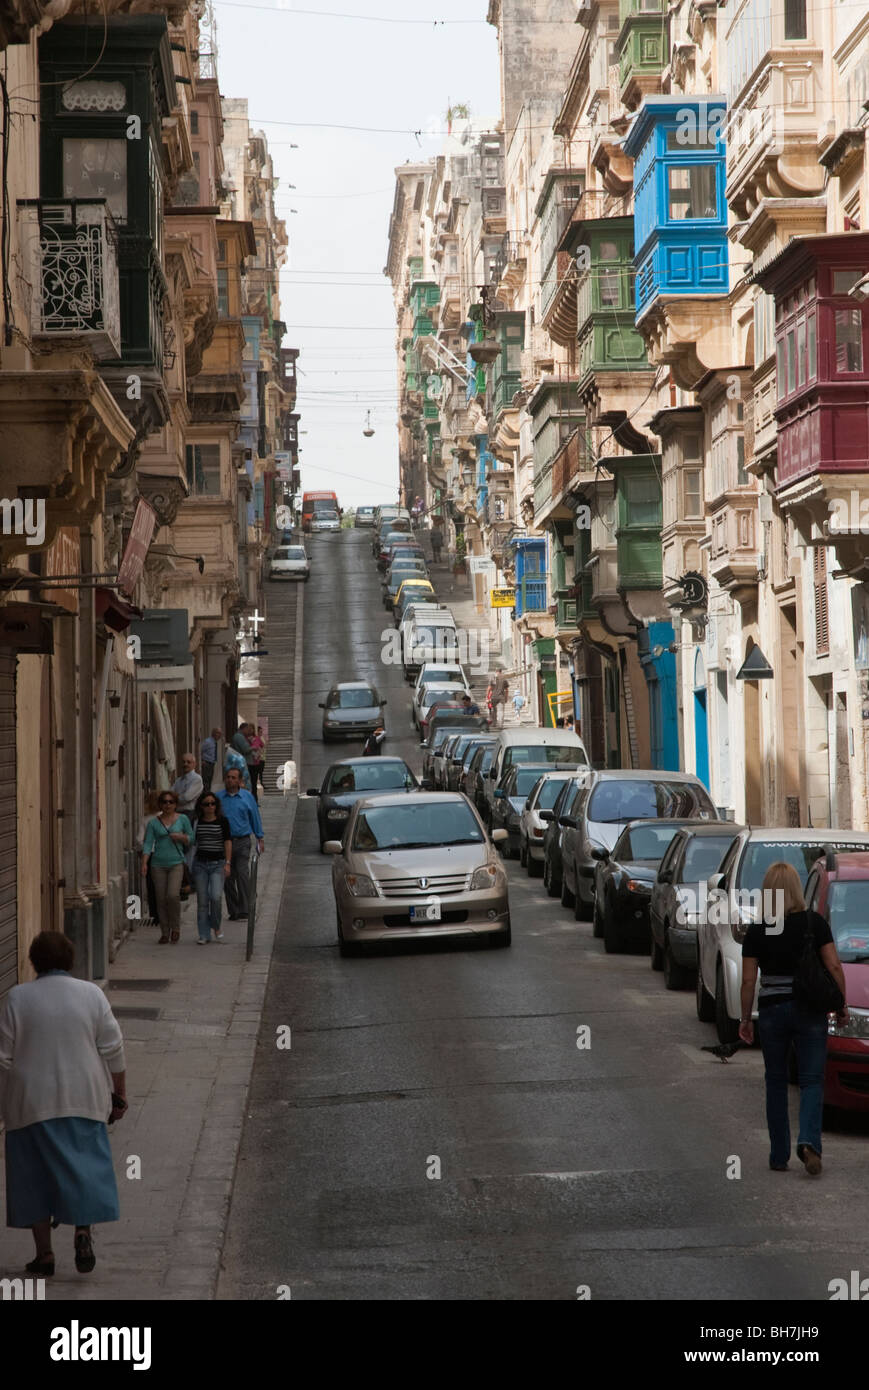 Typical street scene in Valletta, Malta Stock Photo